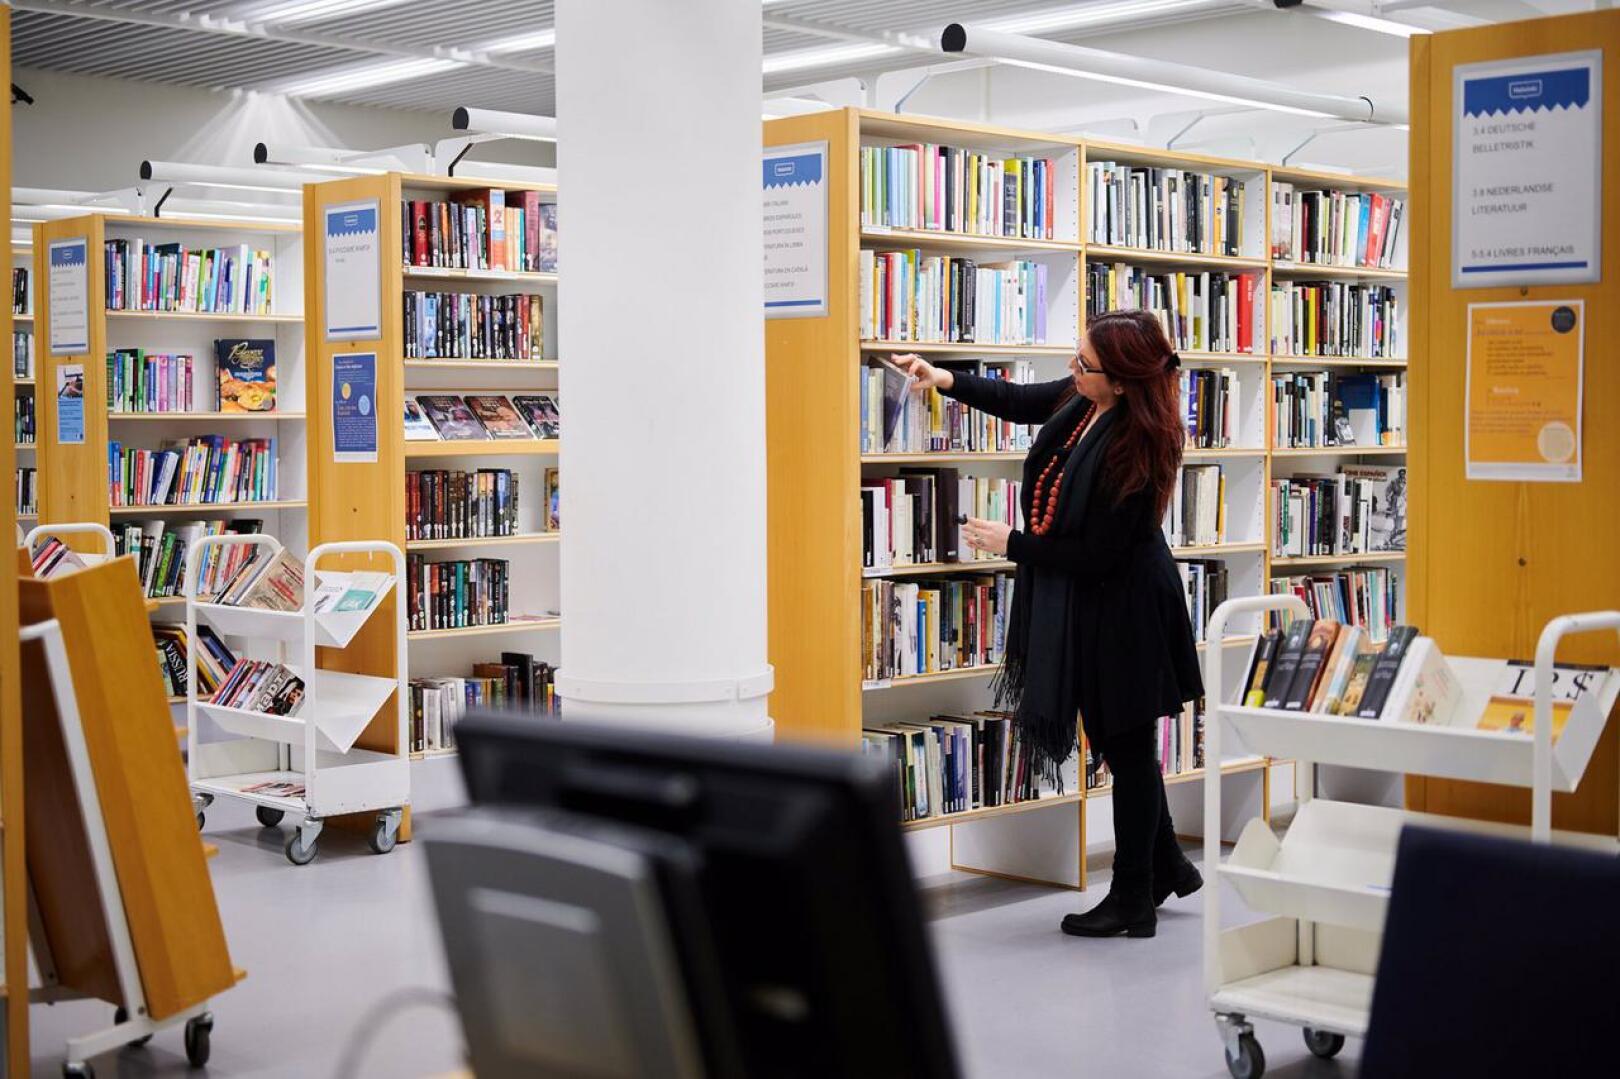 Moni kokee kirjastojen tarjoaman ilmaisen ja rauhallisen oleskelutilan tärkeäksi.